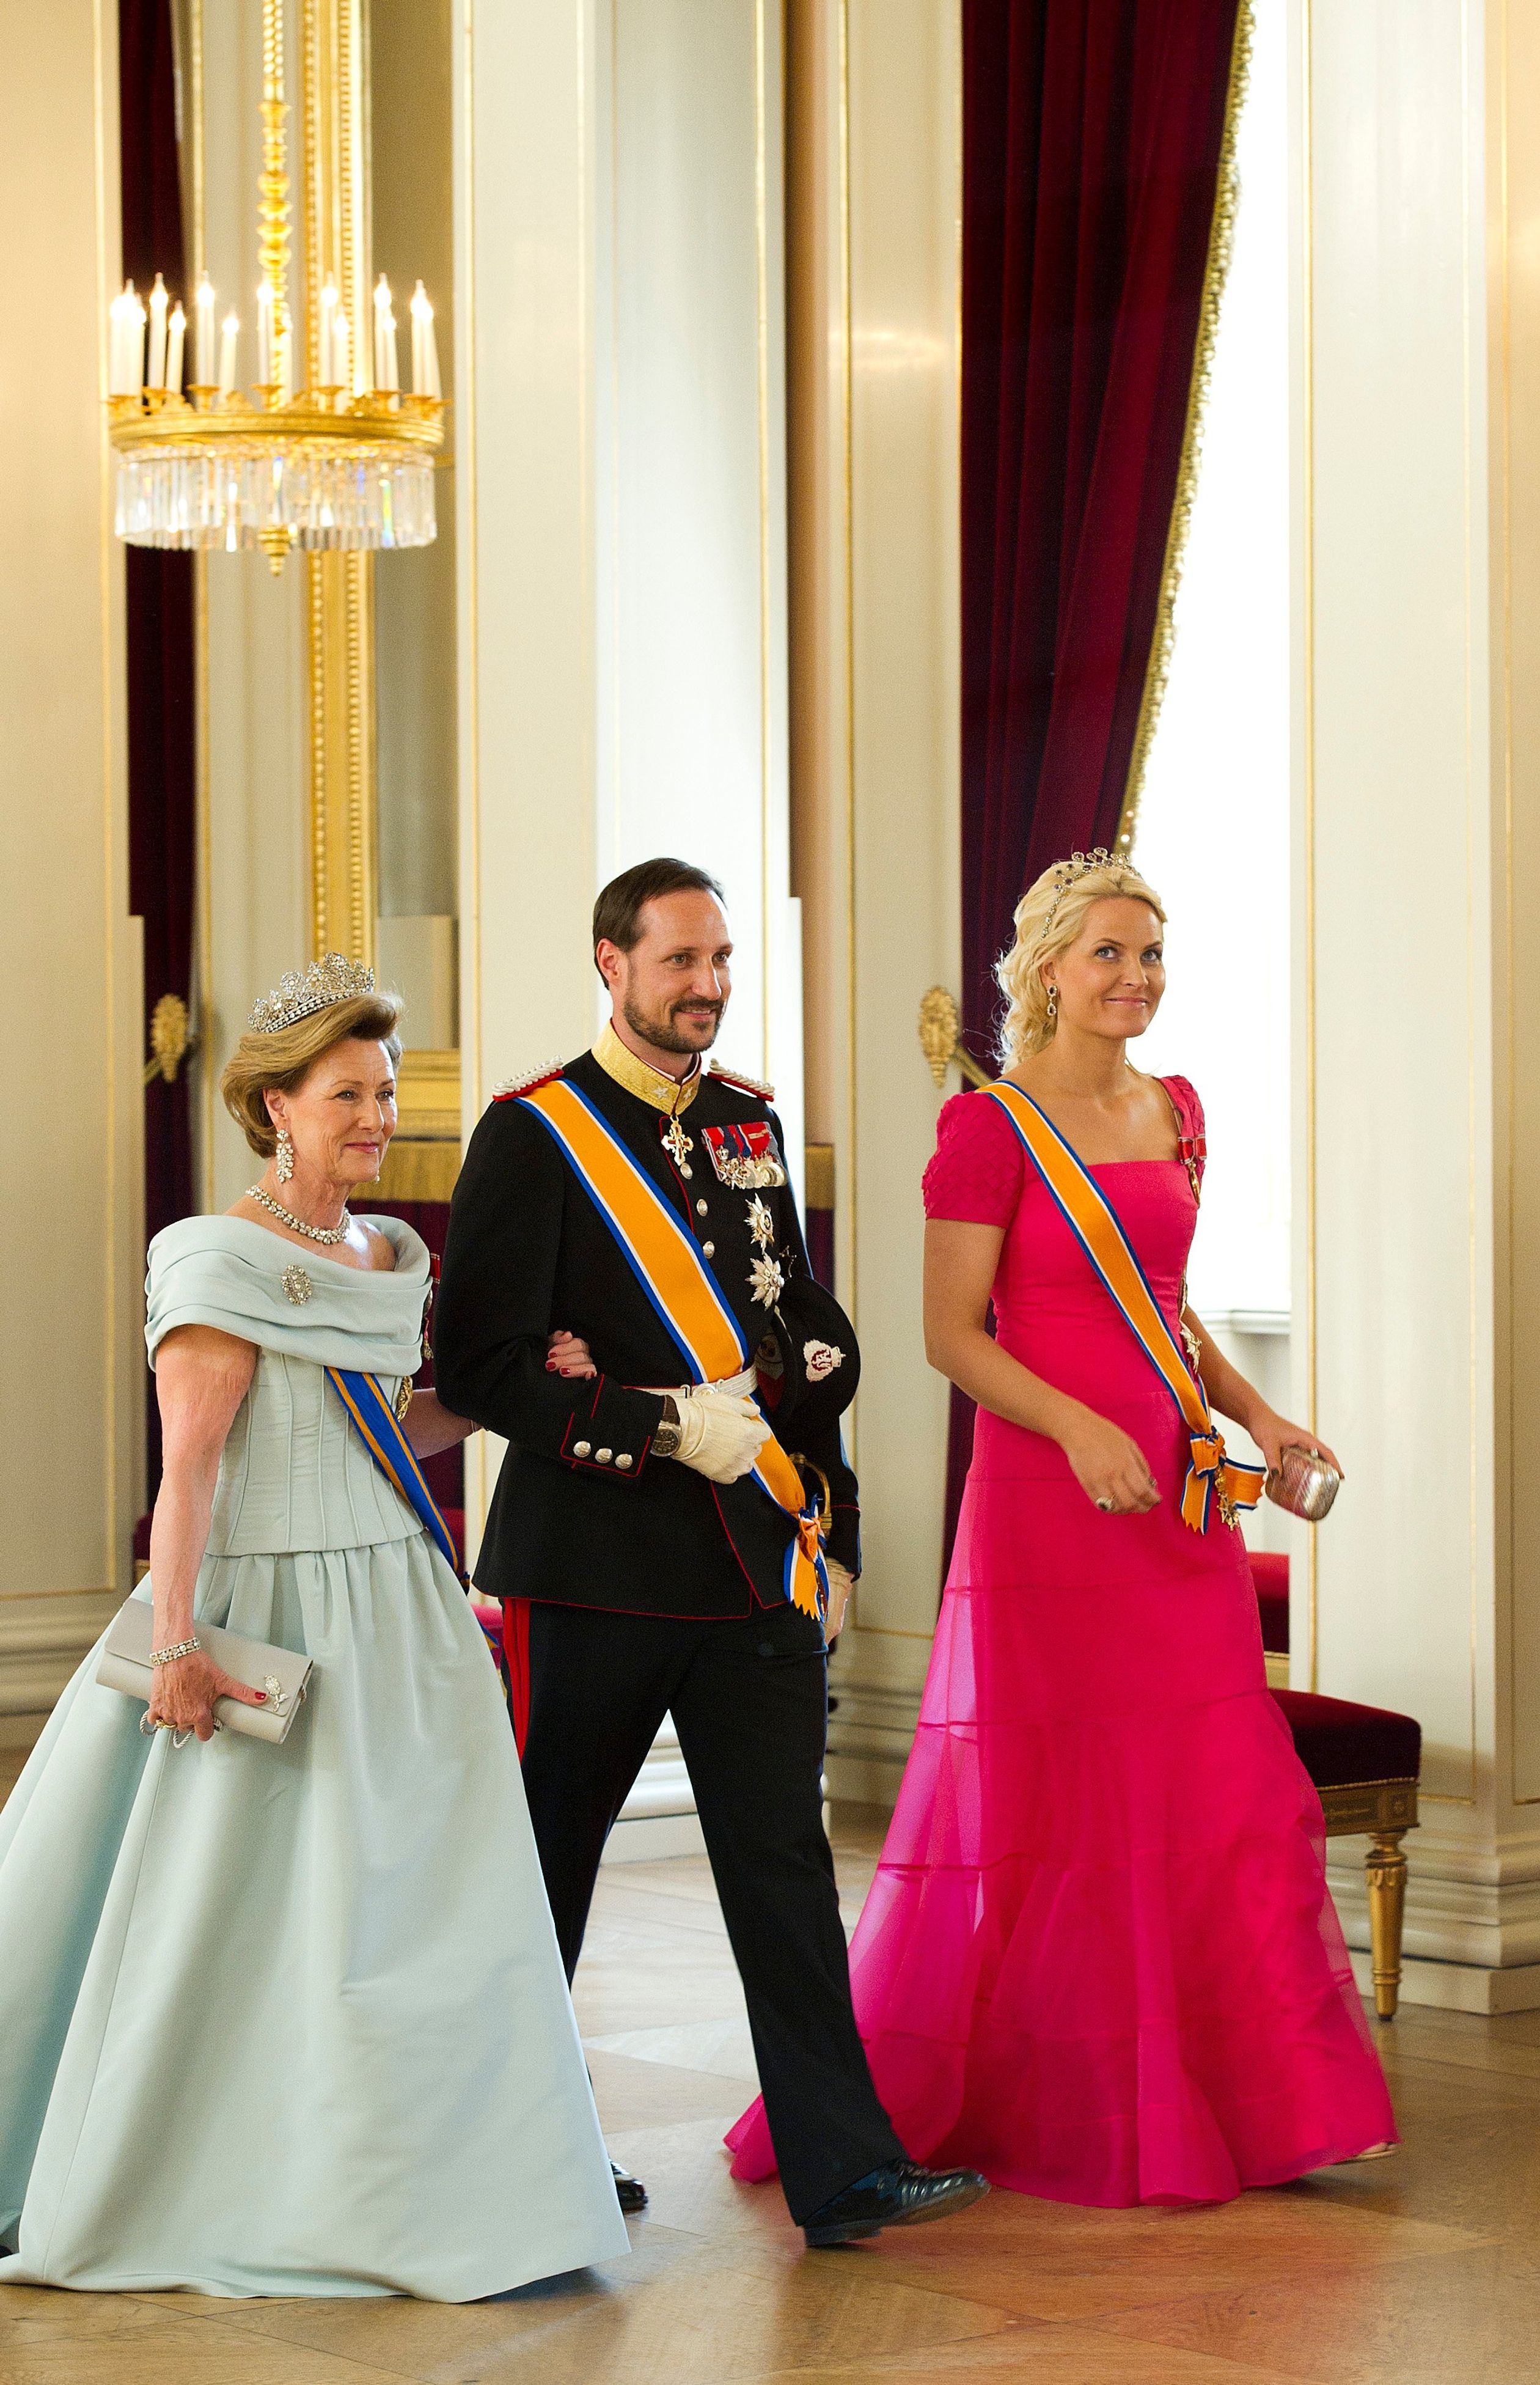 Samen met het kroonprinselijk paar naar het staatsbanket voor koningin Beatrix in het Koninklijk Paleis in Oslo, 2010.